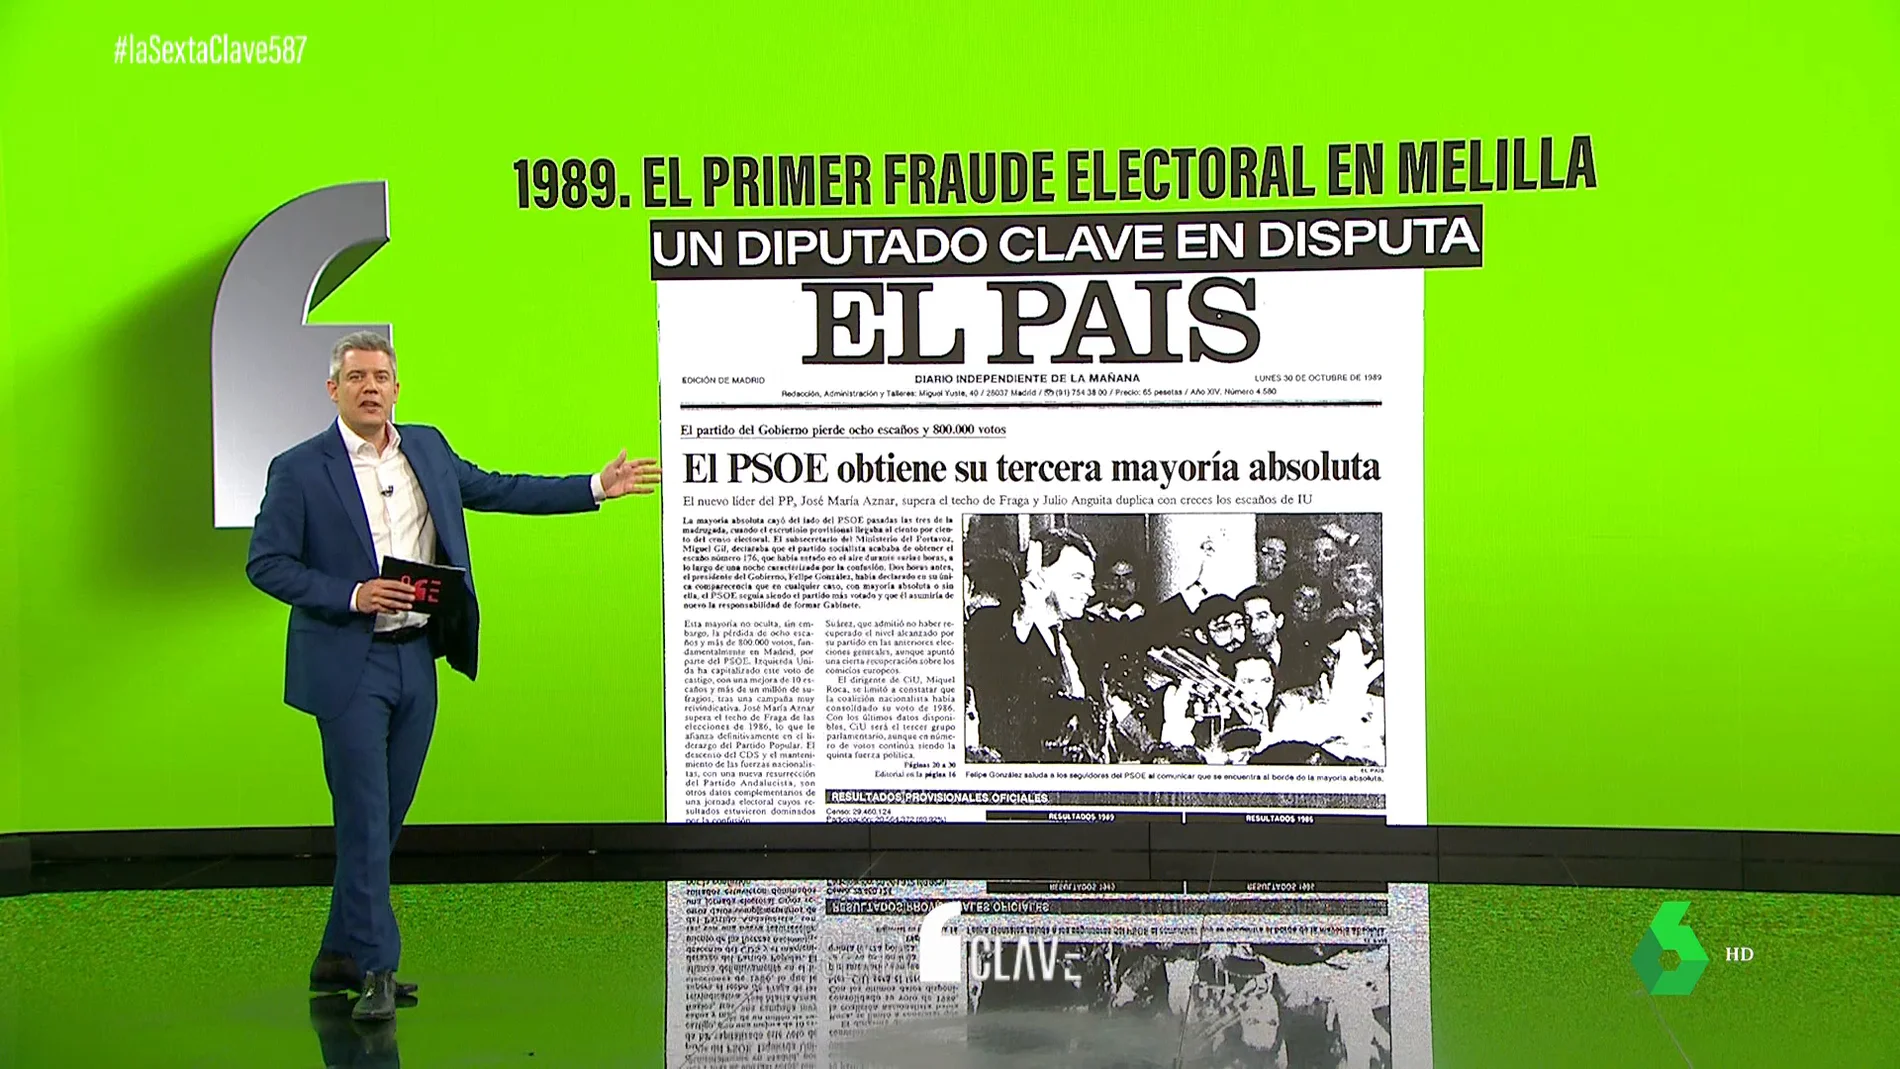 Melilla, sospechosa histórica por fraude: las elecciones de 1989 se repitieron por presuntas irregularidades